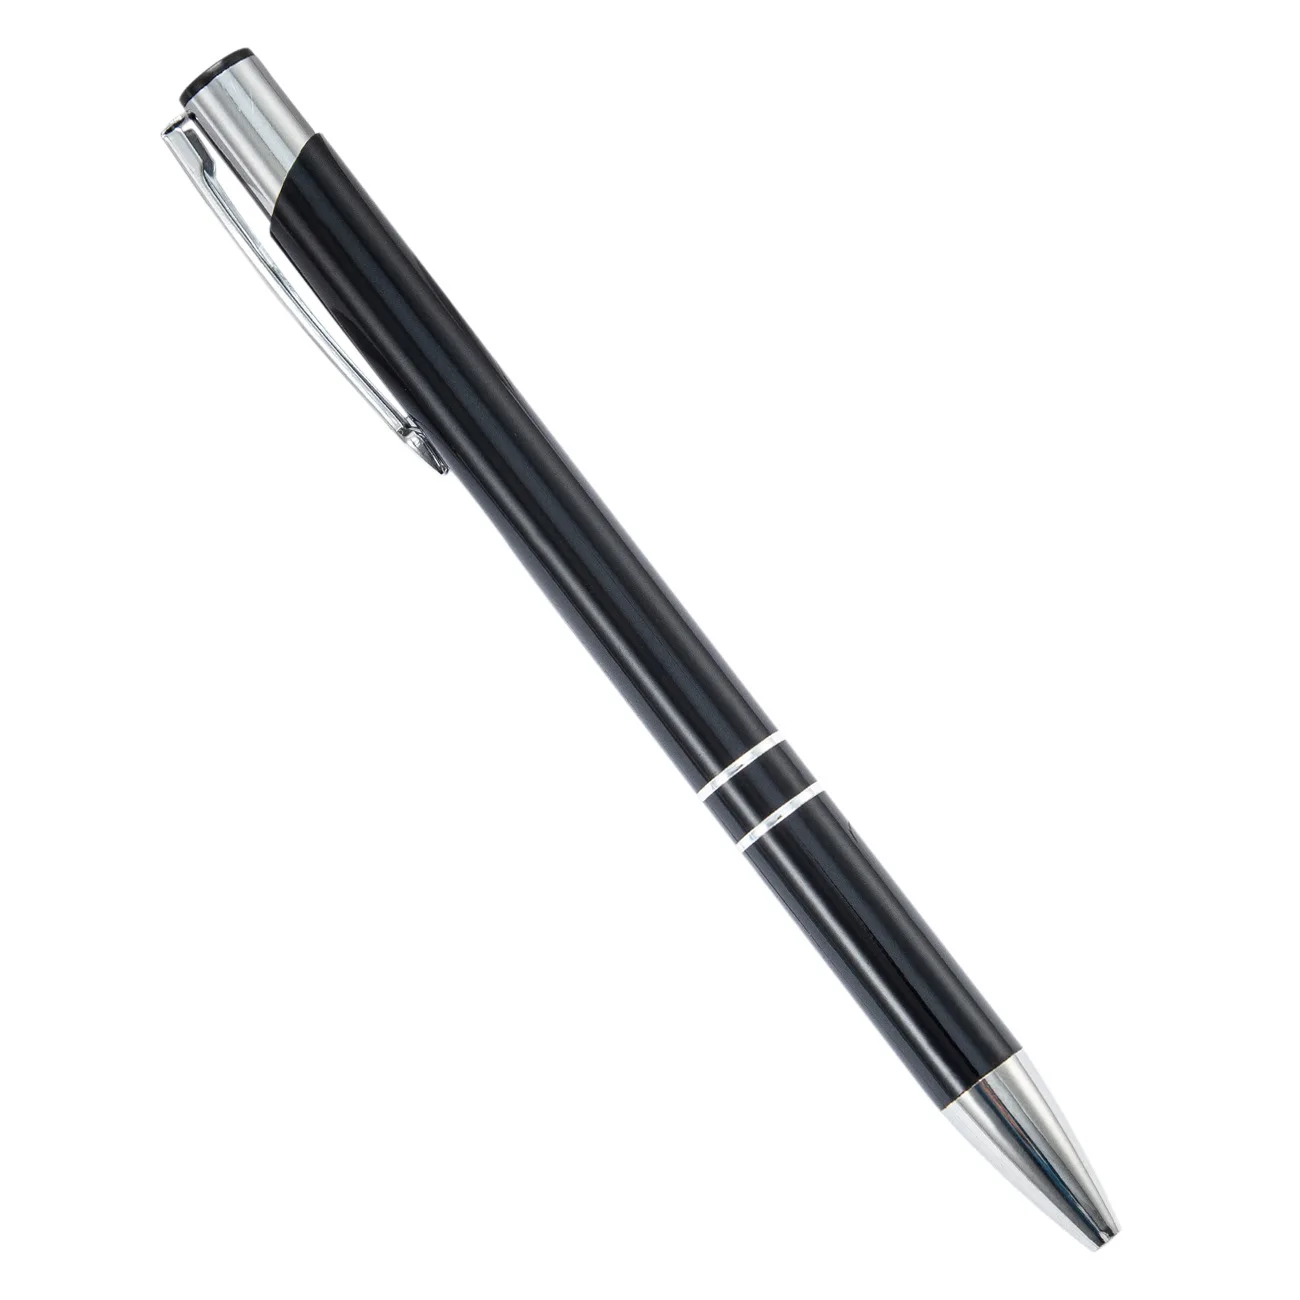 Tükenmez Kalem 21 Adet Basın Metal Basın Tükenmez Kalem Toptan Metal Kalem Hediye Toptan Tükenmez Kalem Sevimli Kırtasiye Sevimli Kalem